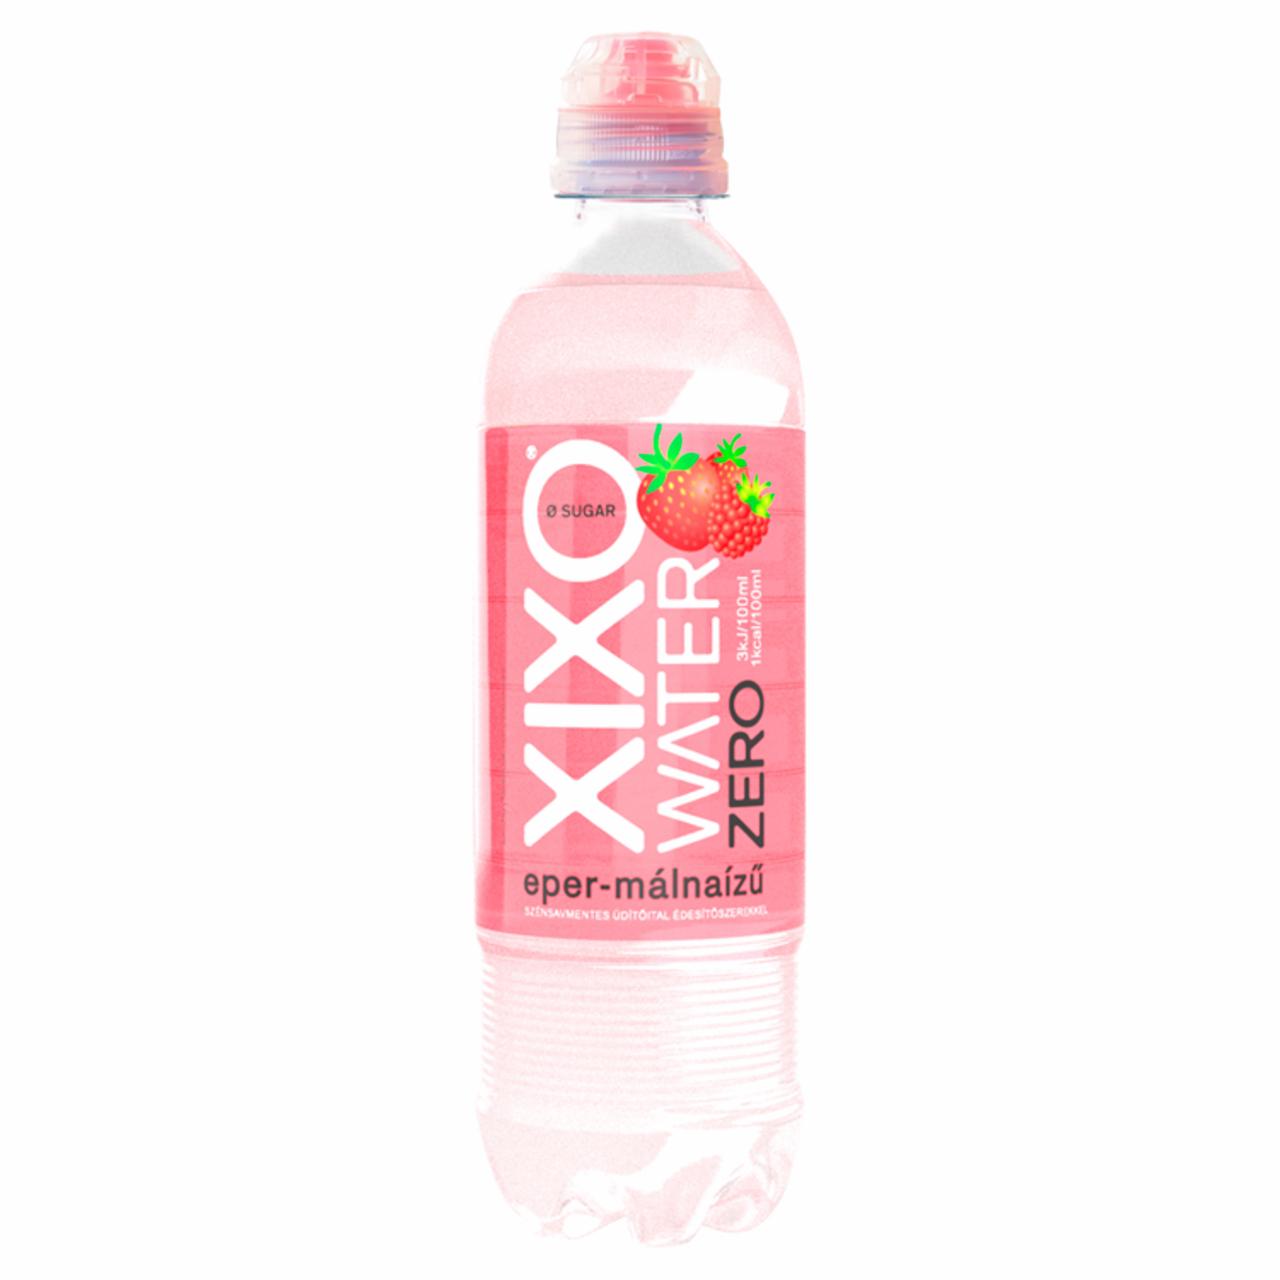 Képek - XIXO Water Zero eper-málnaízű szénsavmentes üdítőital édesítőszerekkel 0,5 l